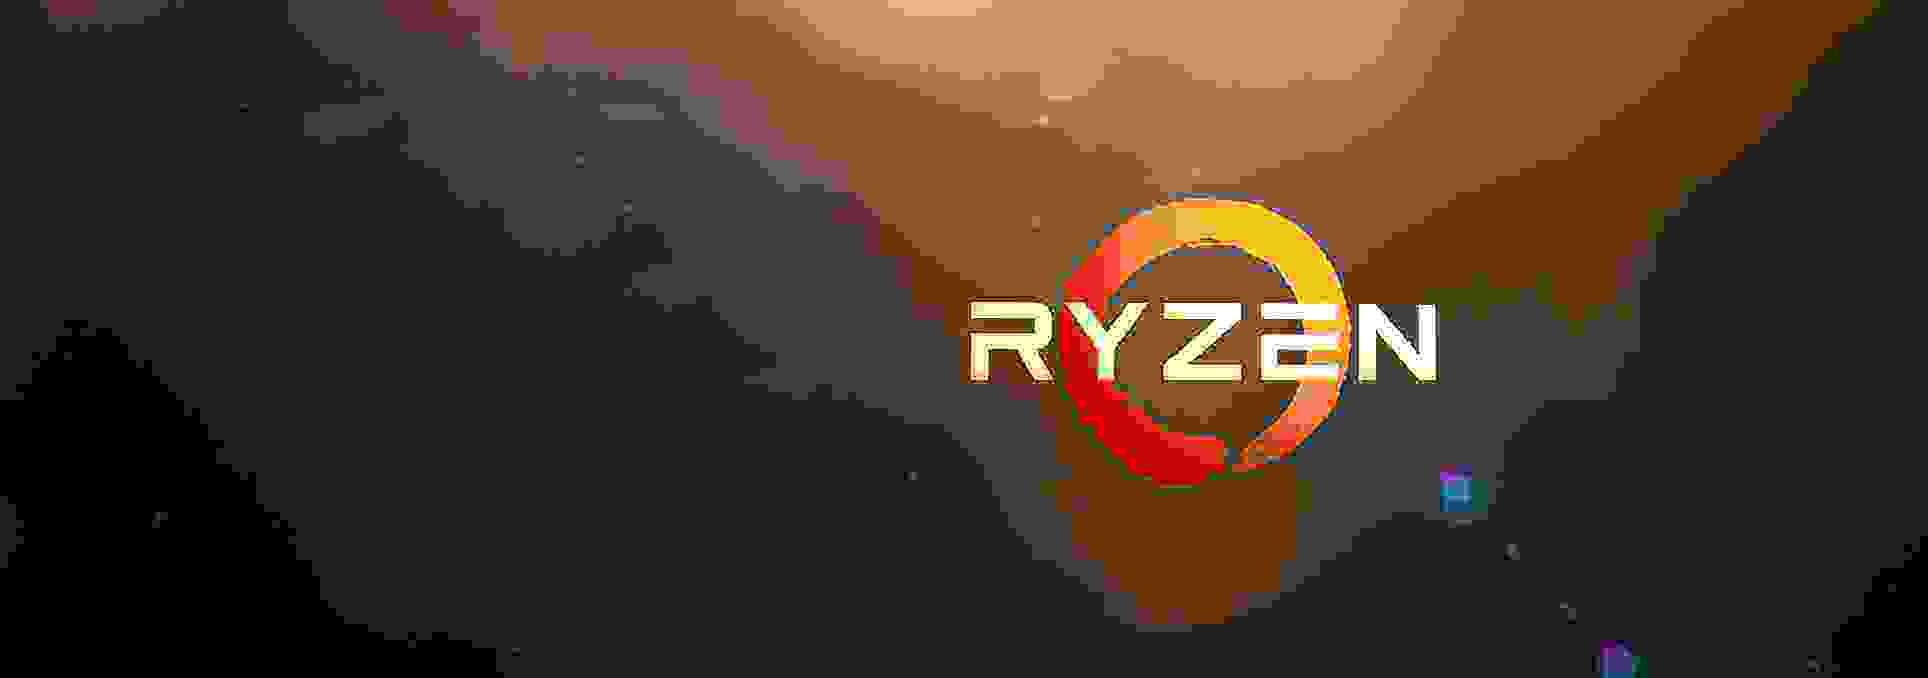 Среди будущих процессоров AMD Ryzen будет восьмиядерная модель с теплопакетом в 45 Вт